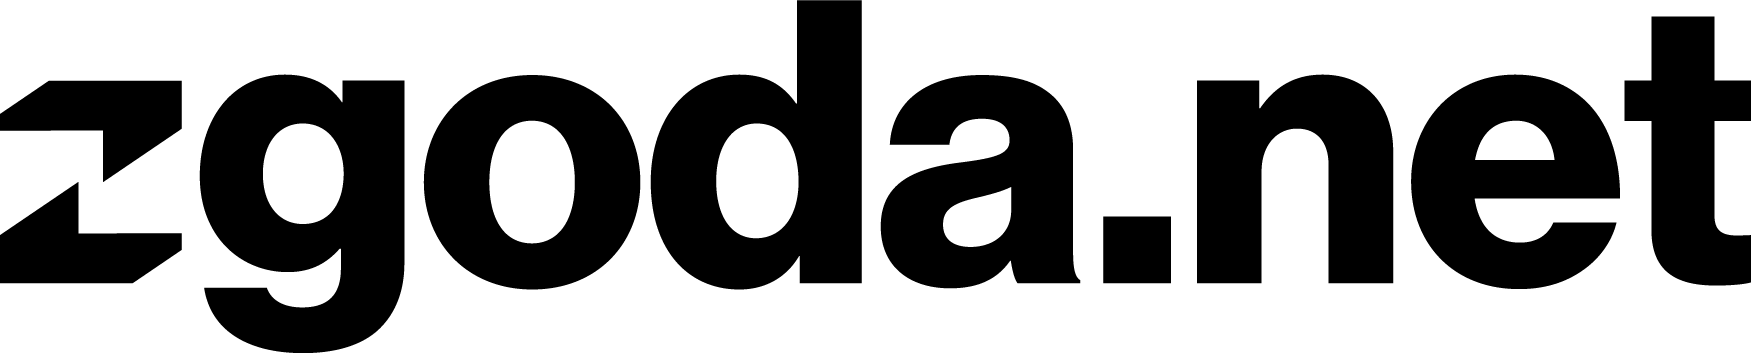 Zgoda_logo_transparent - bazowe logo